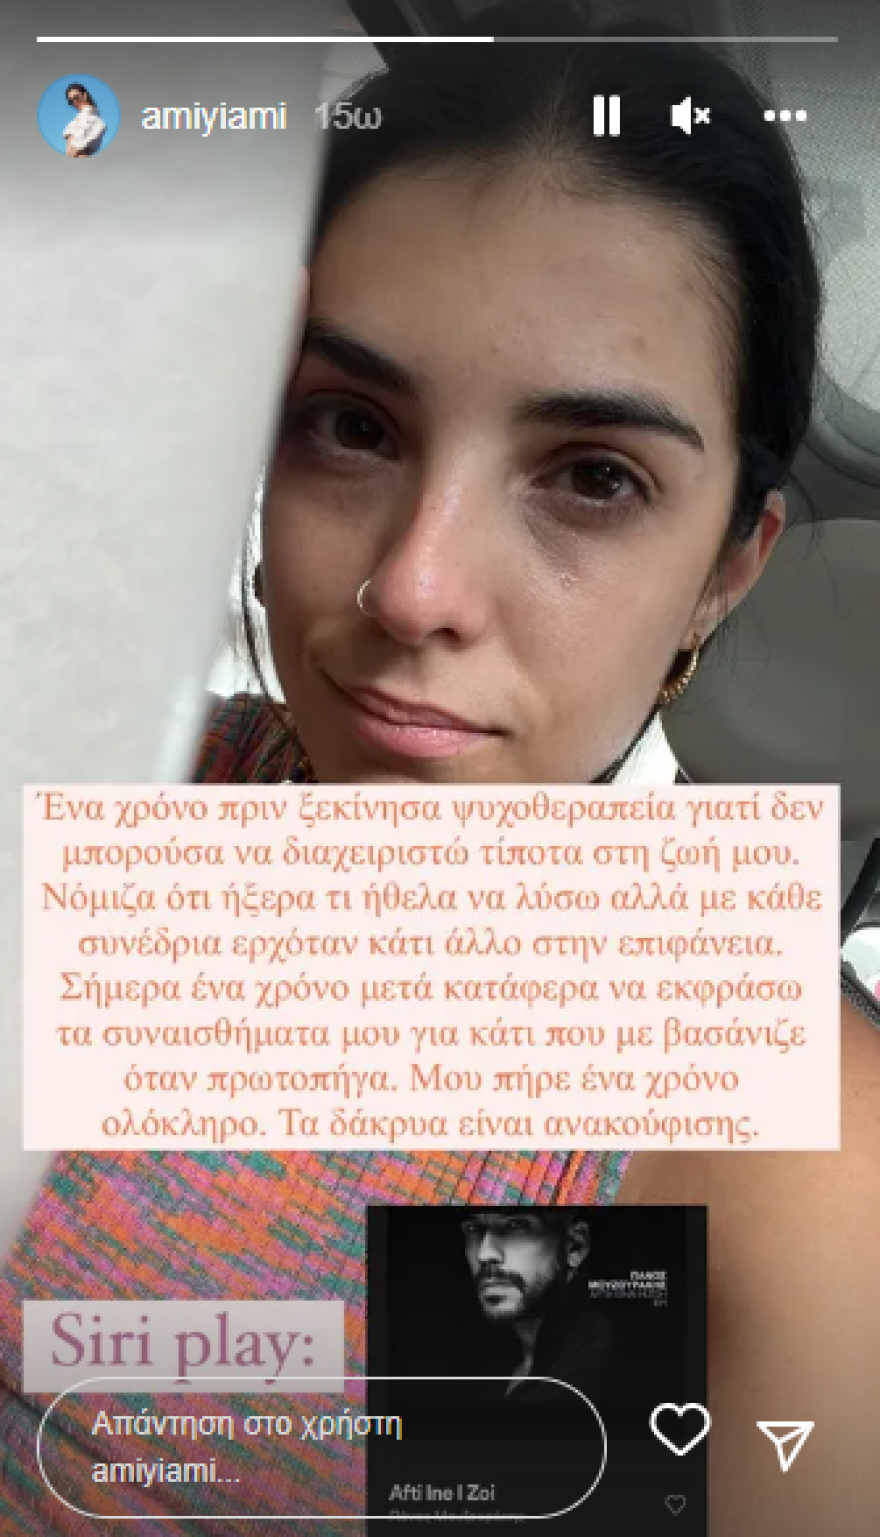 βελλη, Άννα Μαρία Βέλλη: Μετά από έναν χρόνο ψυχοθεραπείας, κάνει τον απολογισμό της &#8211; «Τα δάκρυα είναι ανακούφισης»